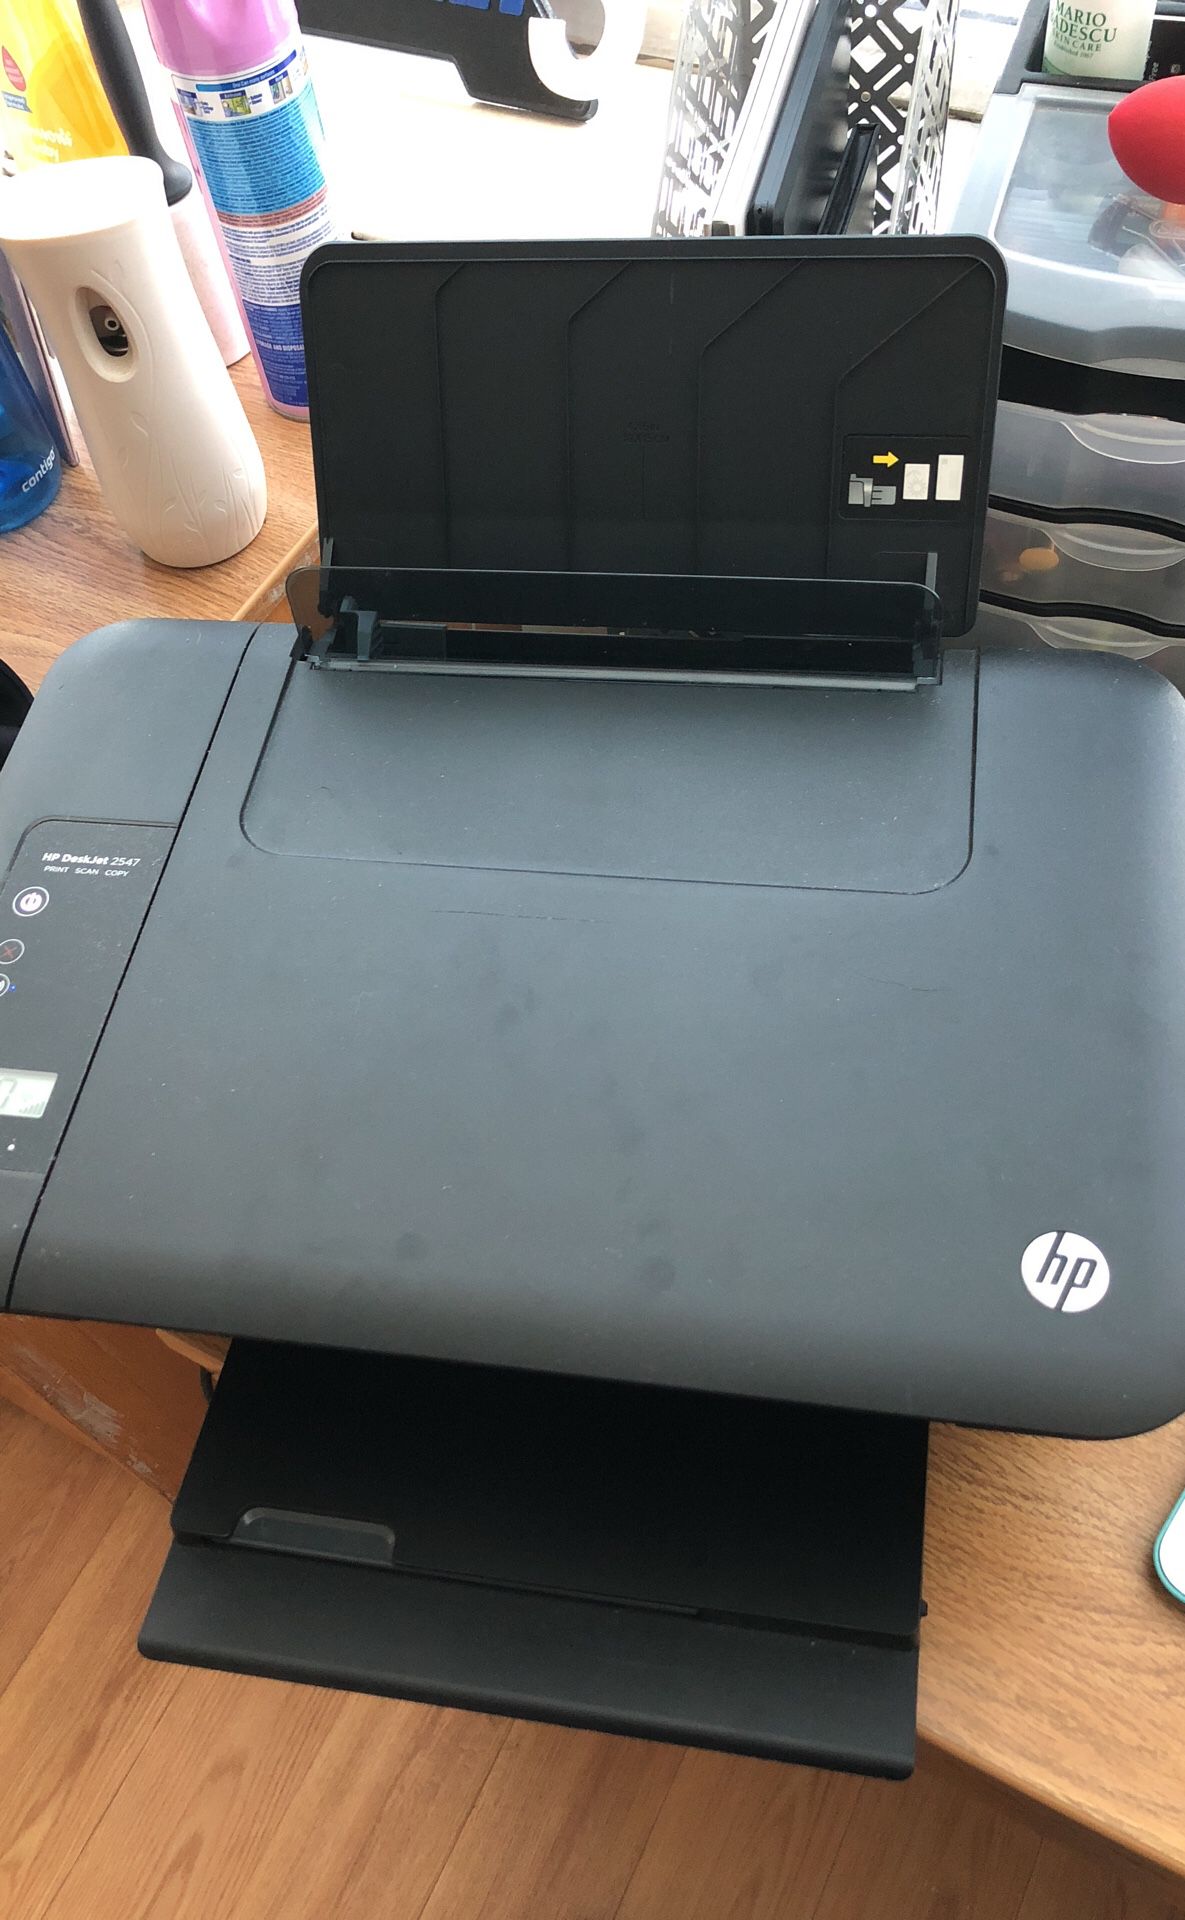 HP DeskJet 2540 Printer